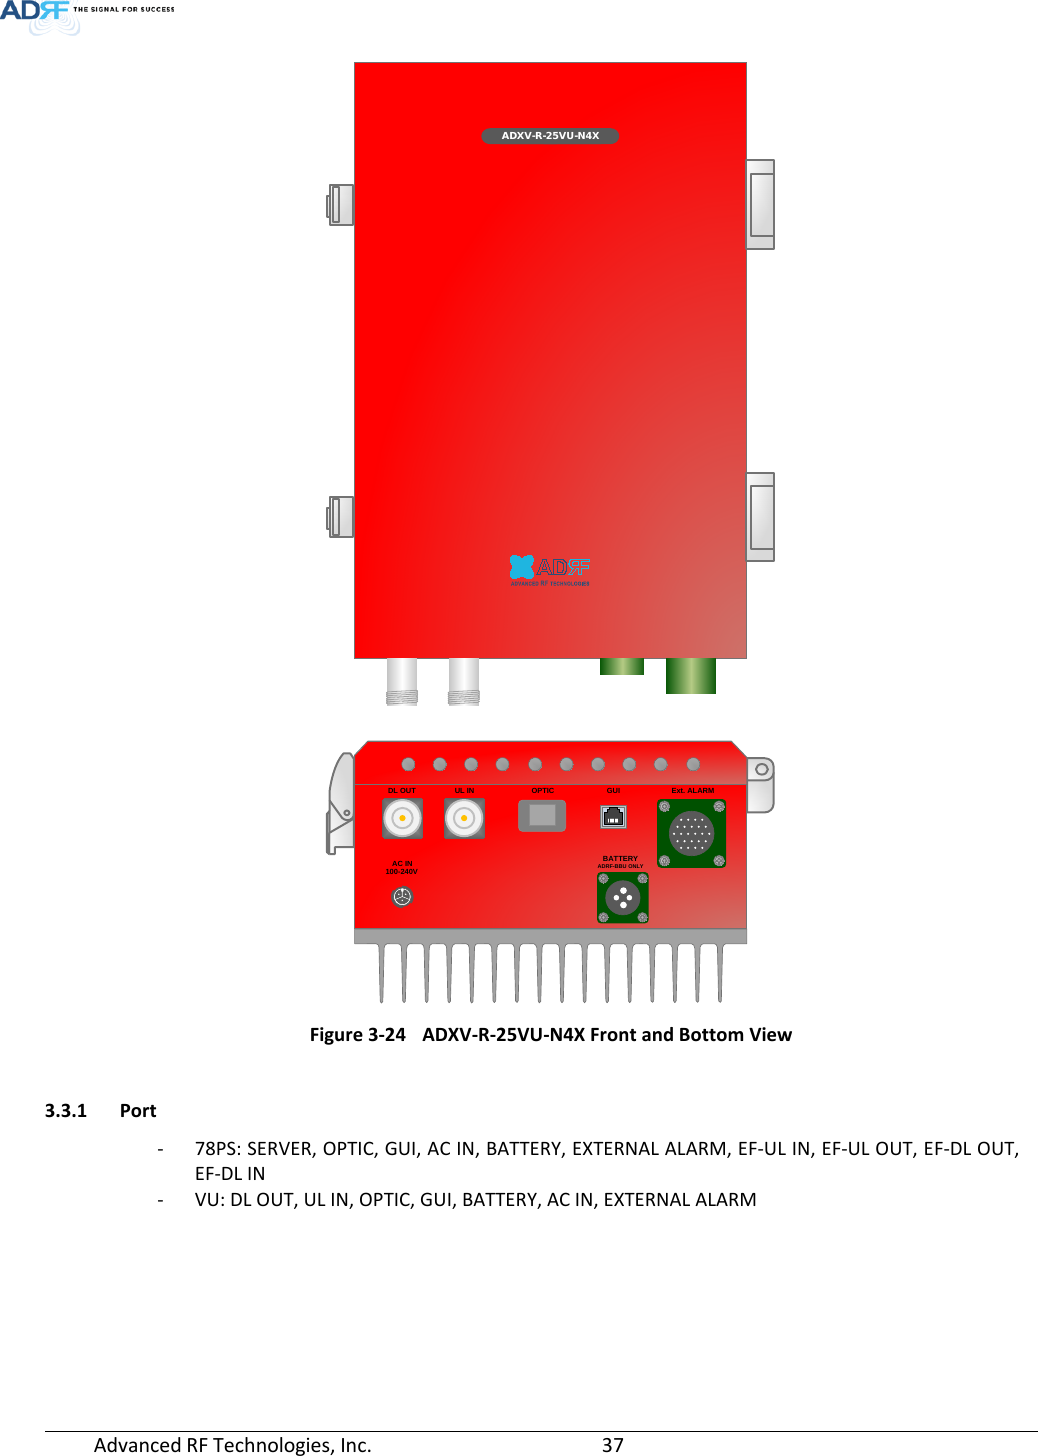 Page 37 of ADRF KOREA ADXV-R-25VUNA DAS (Distributed Antenna System) User Manual ADXV DAS